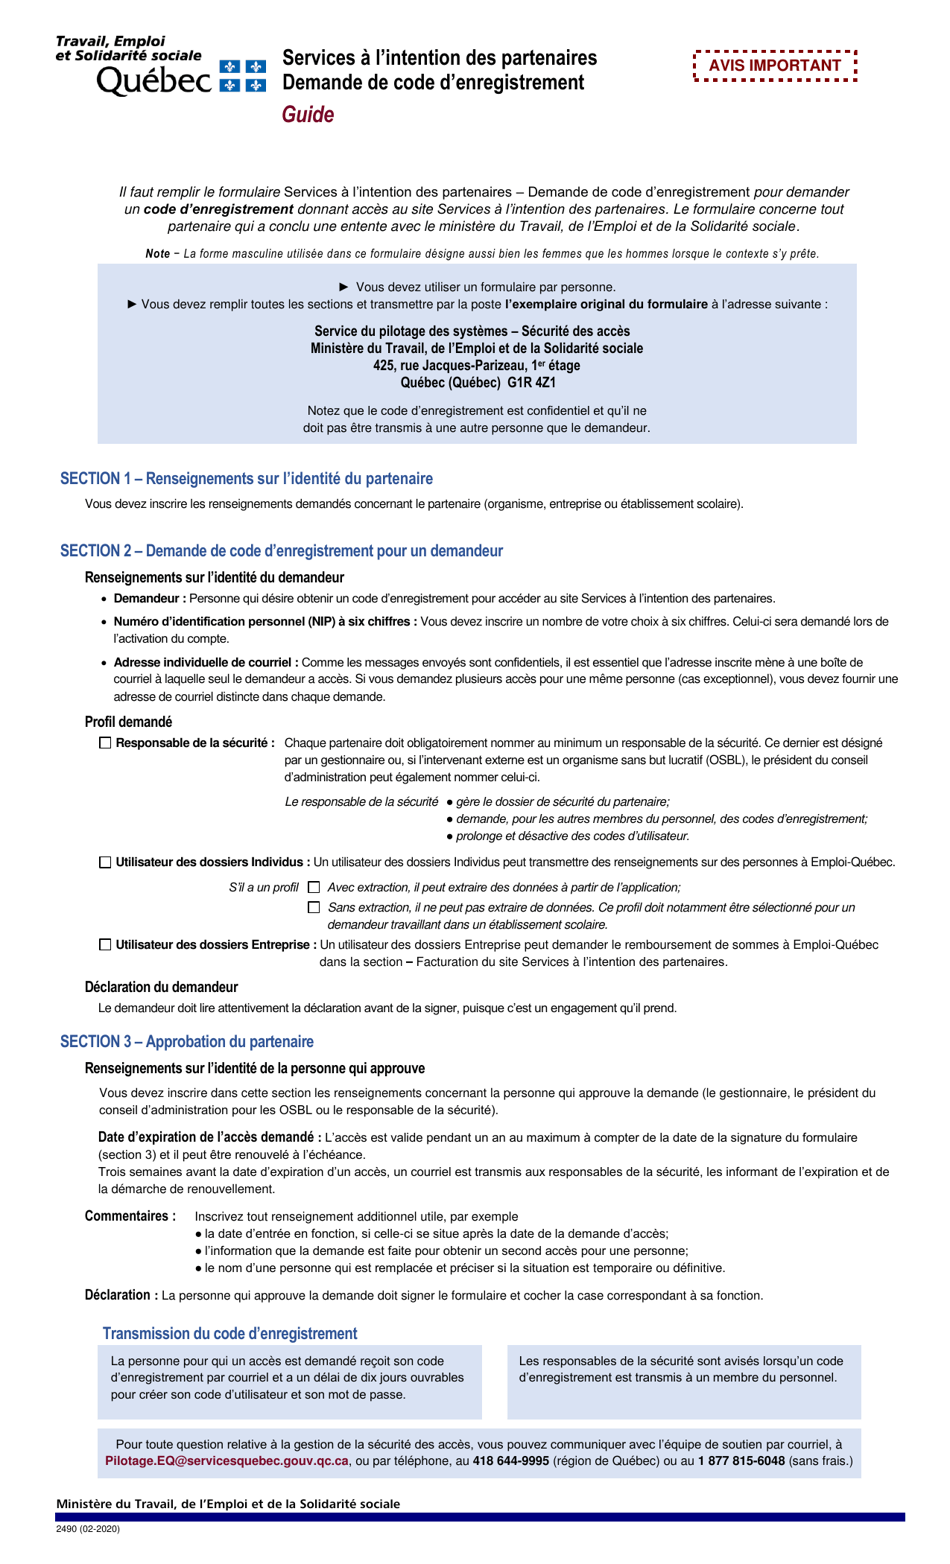 Forme 2490 Services a Lintention DES Partenaires Demande De Code Denregistrement - Quebec, Canada (French), Page 1